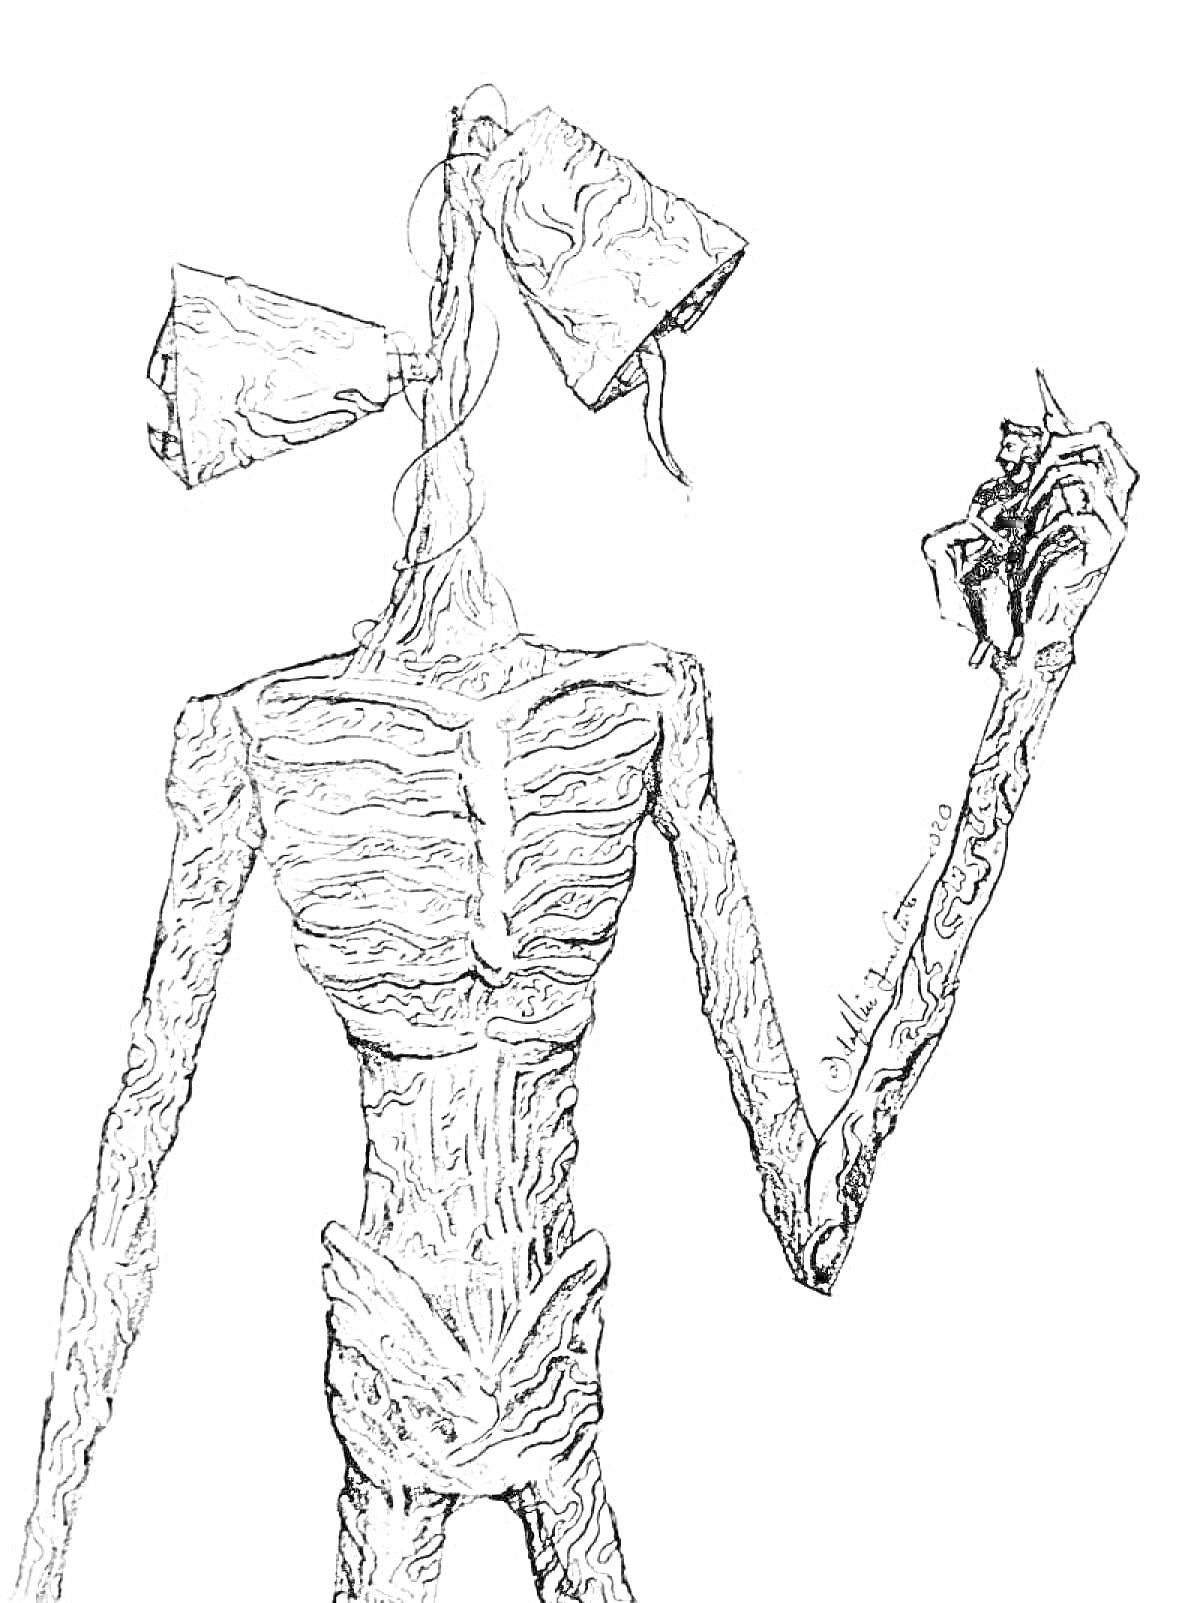 Раскраска Сирена головы с приподнятой рукой, рисунок с деталями текстуры кожи и сиренами на голове